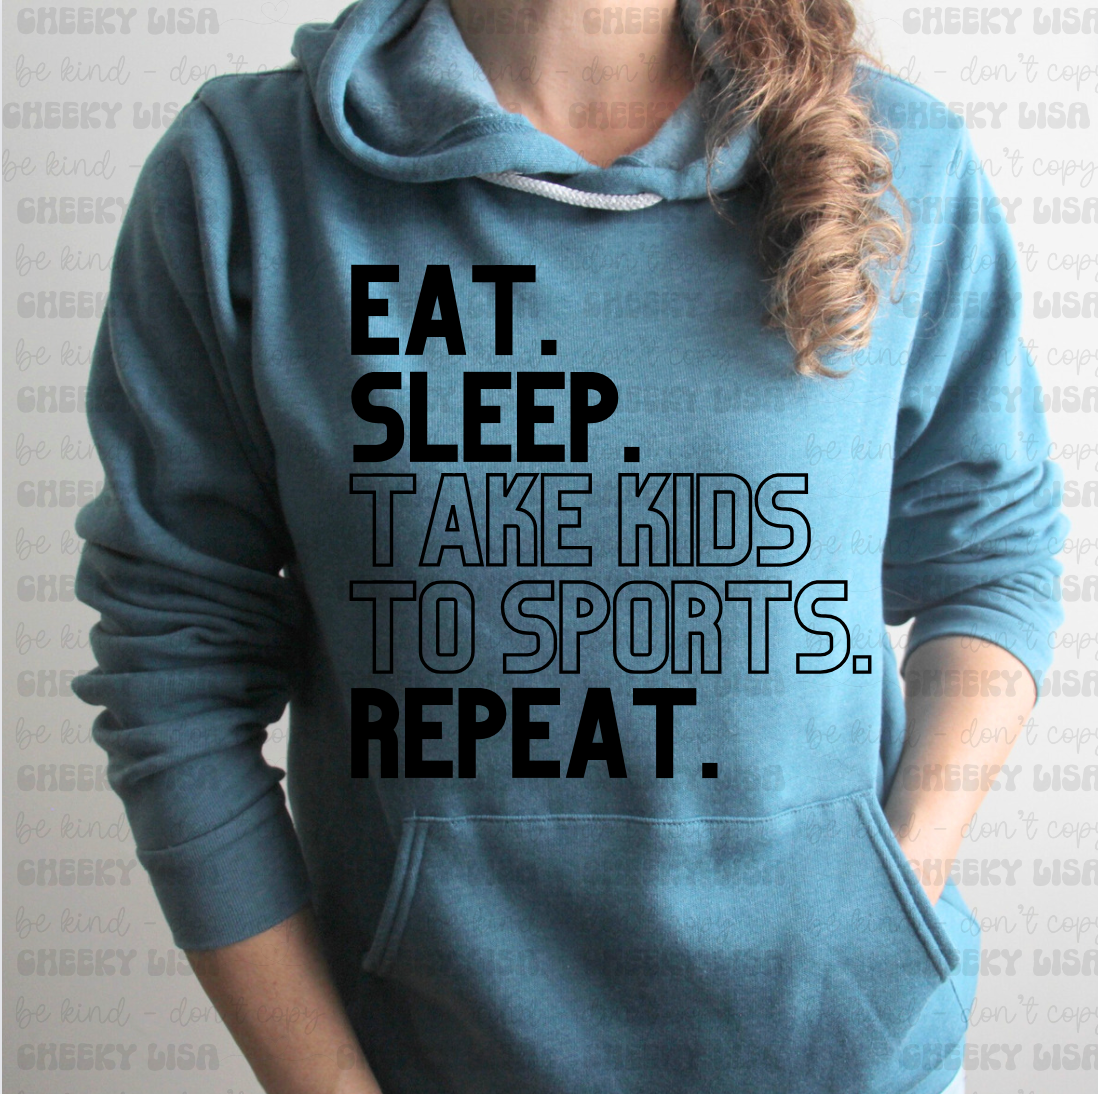 Eat. Sleep. Take Kids to Sports. Repeat.